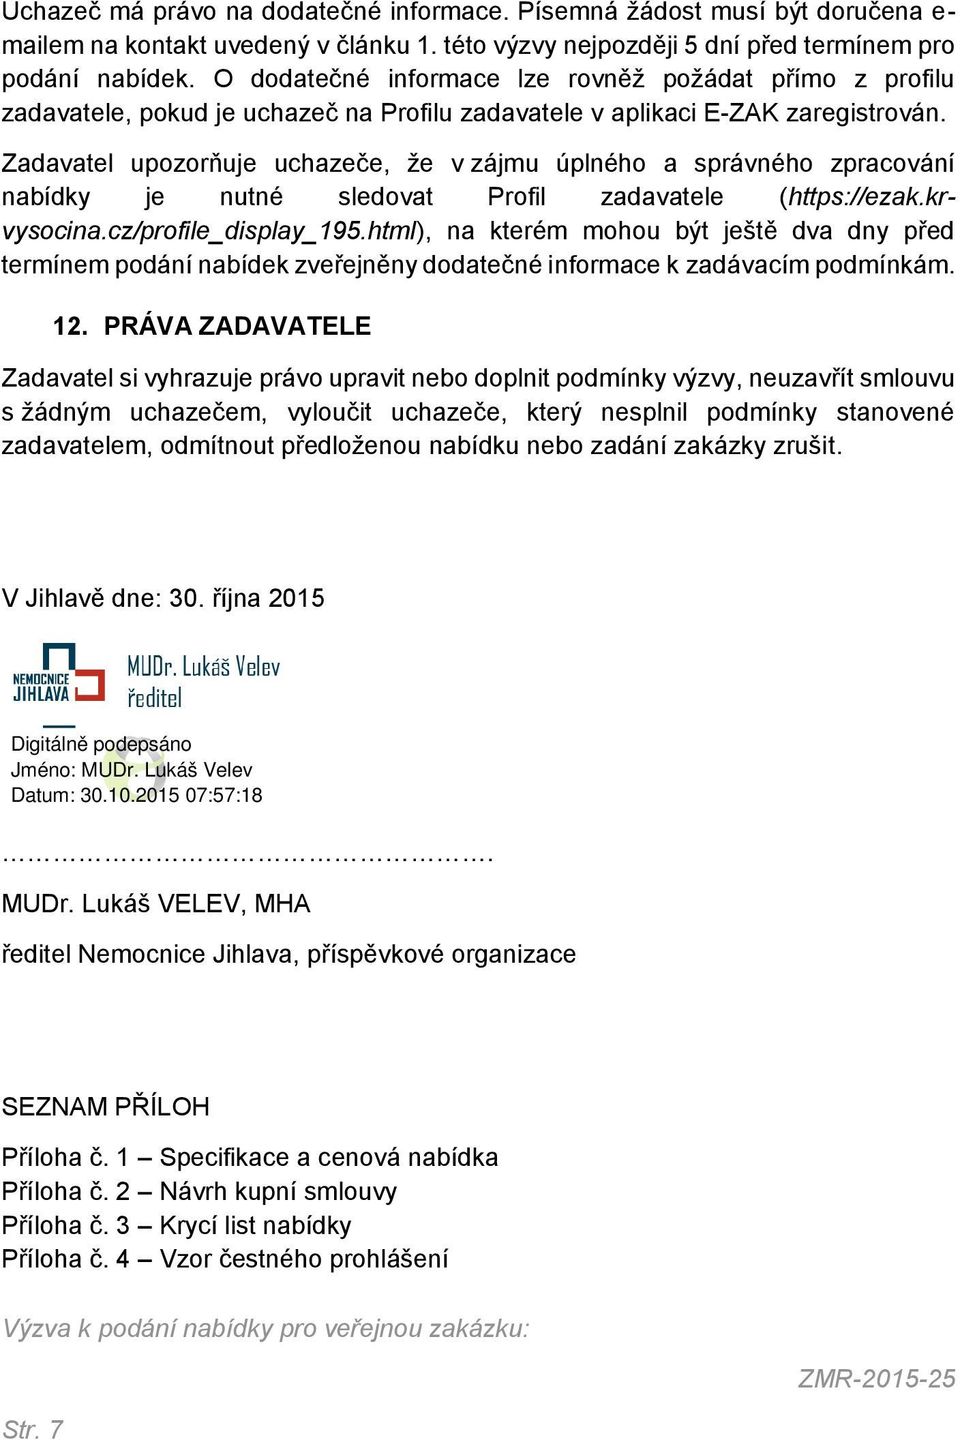 Zadavatel upozorňuje uchazeče, že v zájmu úplného a správného zpracování nabídky je nutné sledovat Profil zadavatele (https://ezak.krvysocina.cz/profile_display_195.